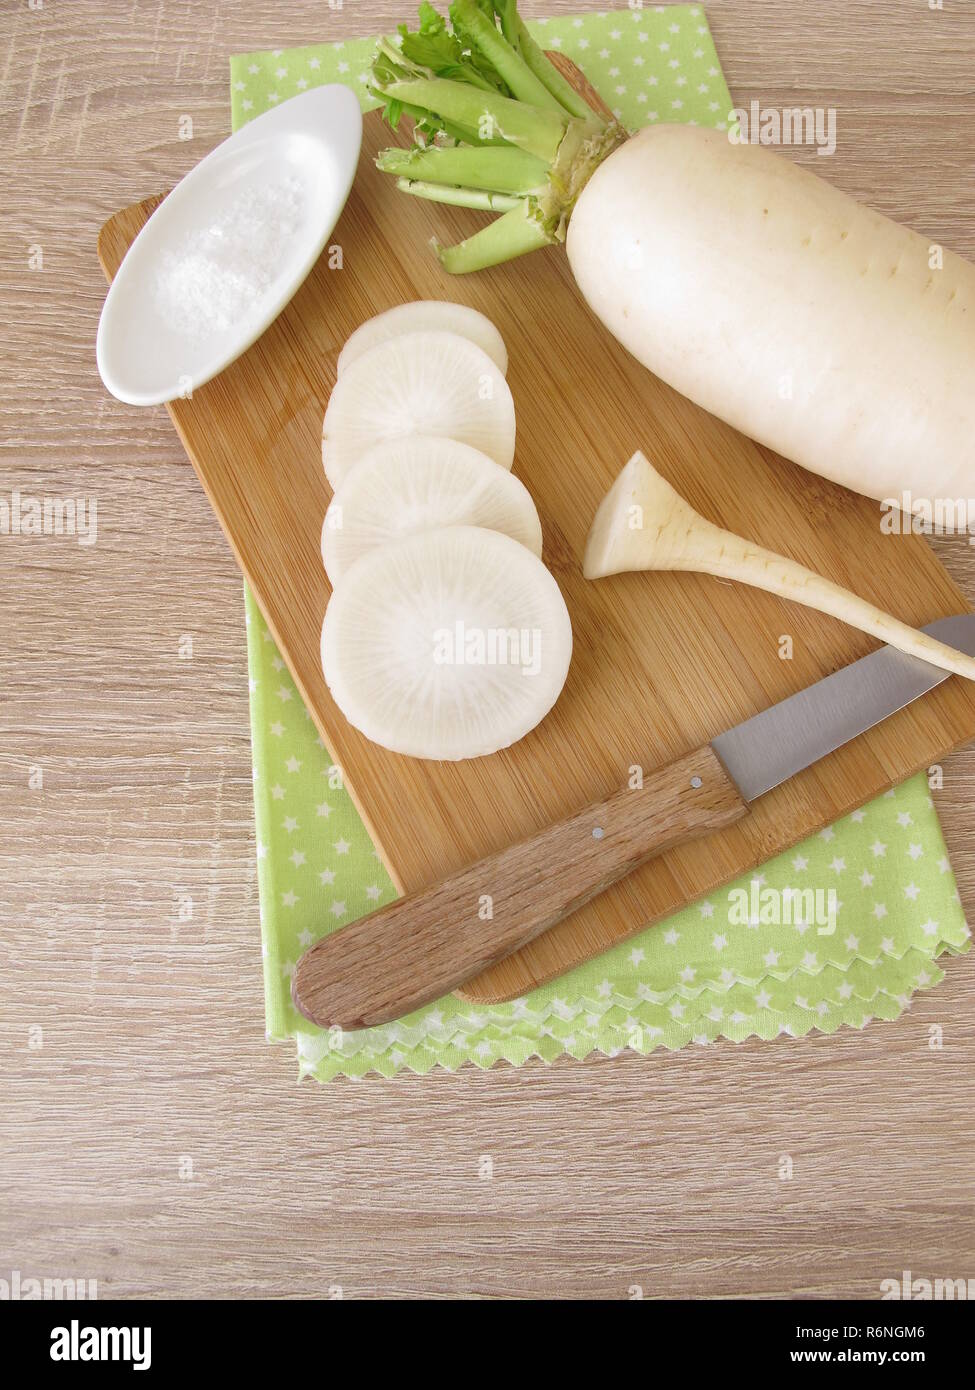 white daikon radish with salt Stock Photo